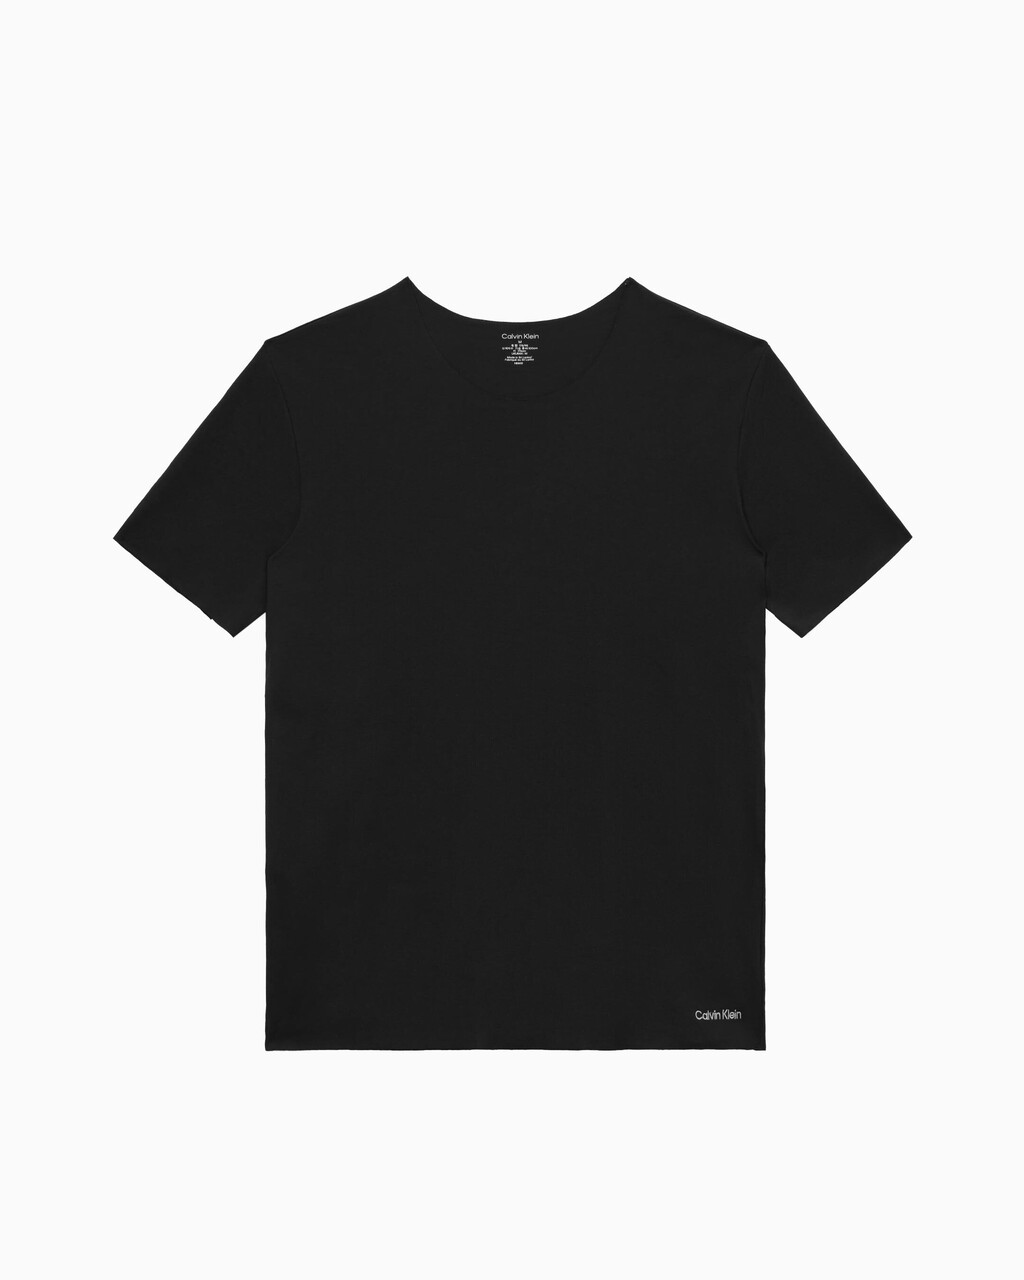 CK Black Crew Neck T-Shirt, Black, hi-res